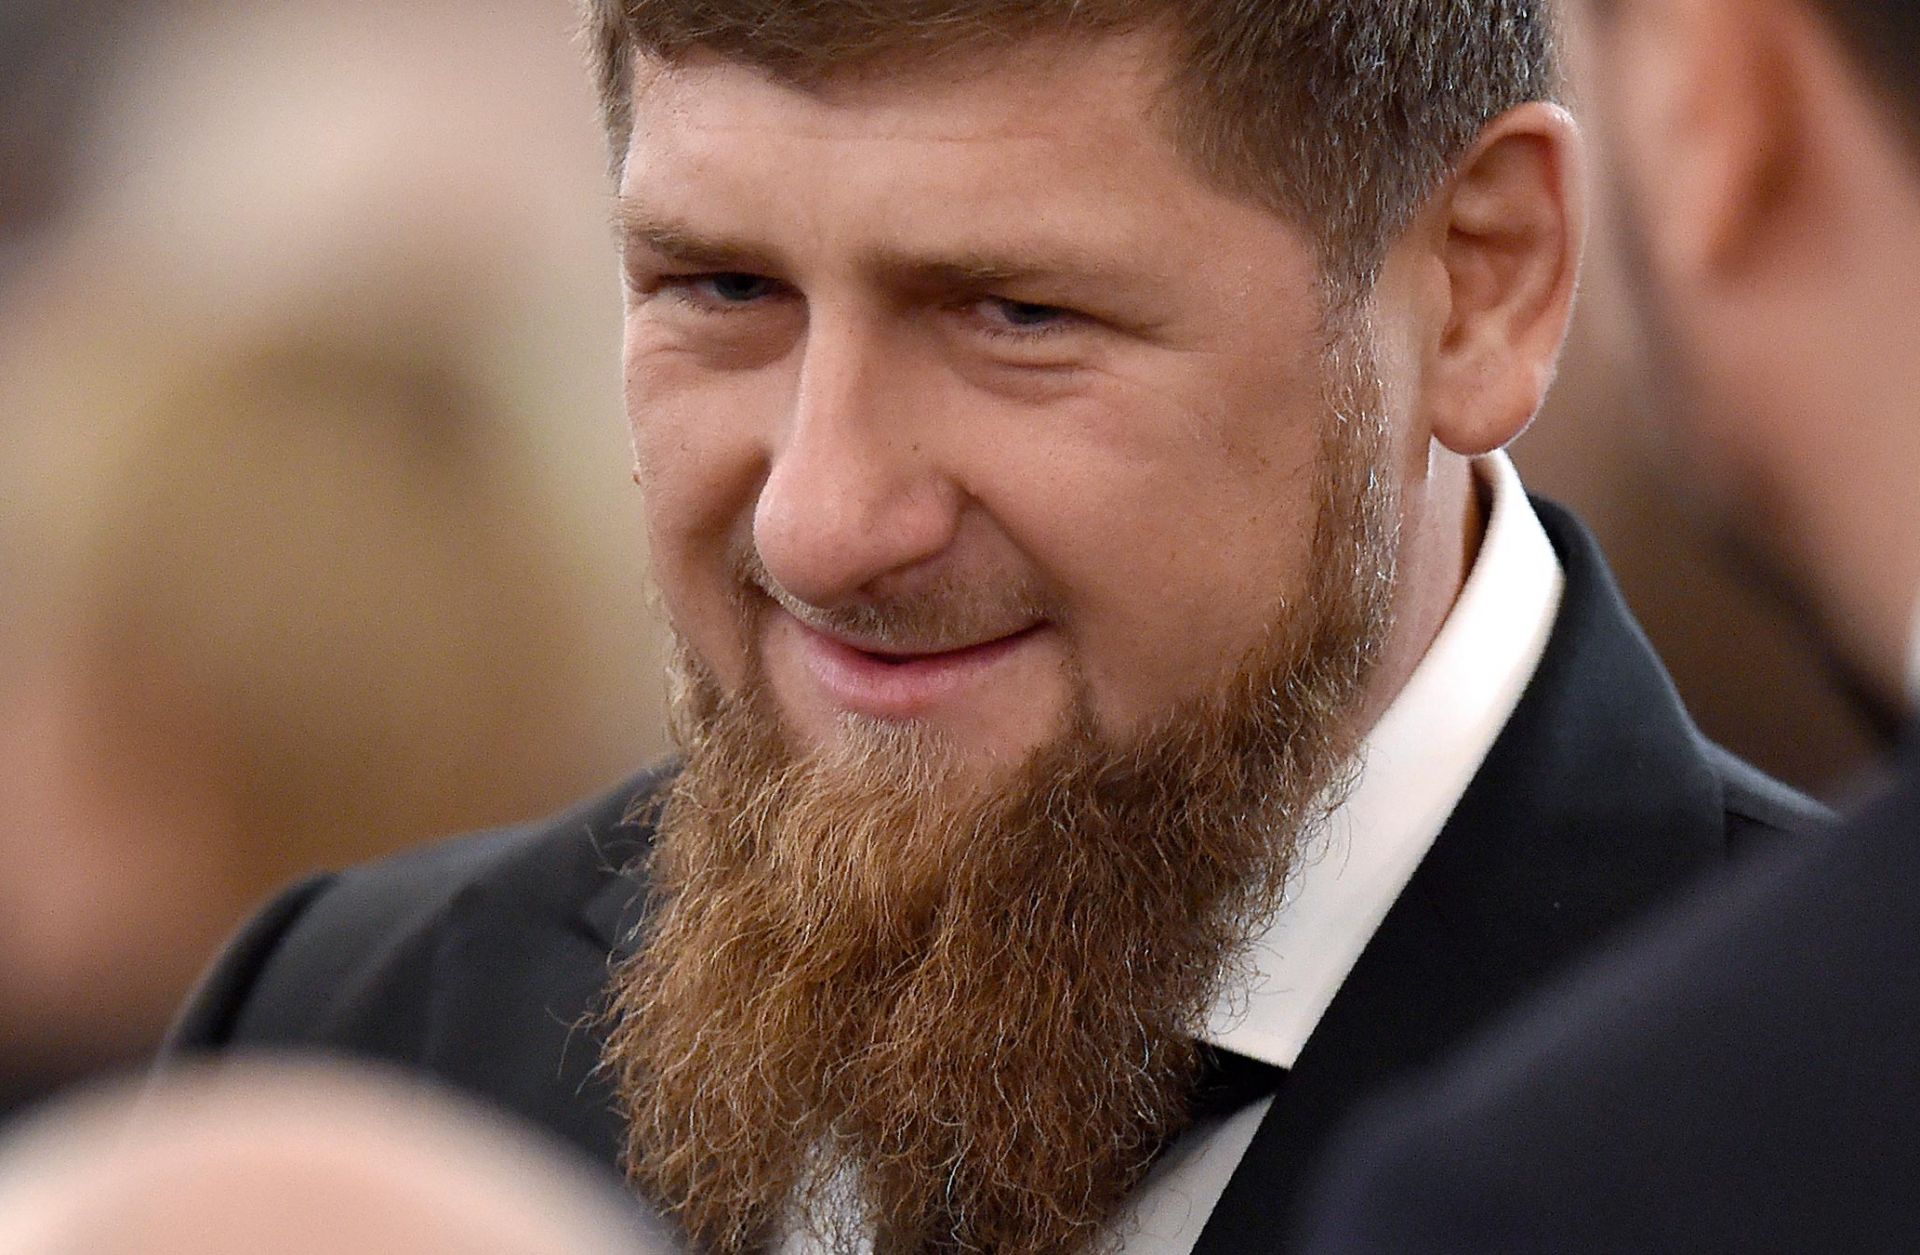 Chechnya's Growing Independent Streak